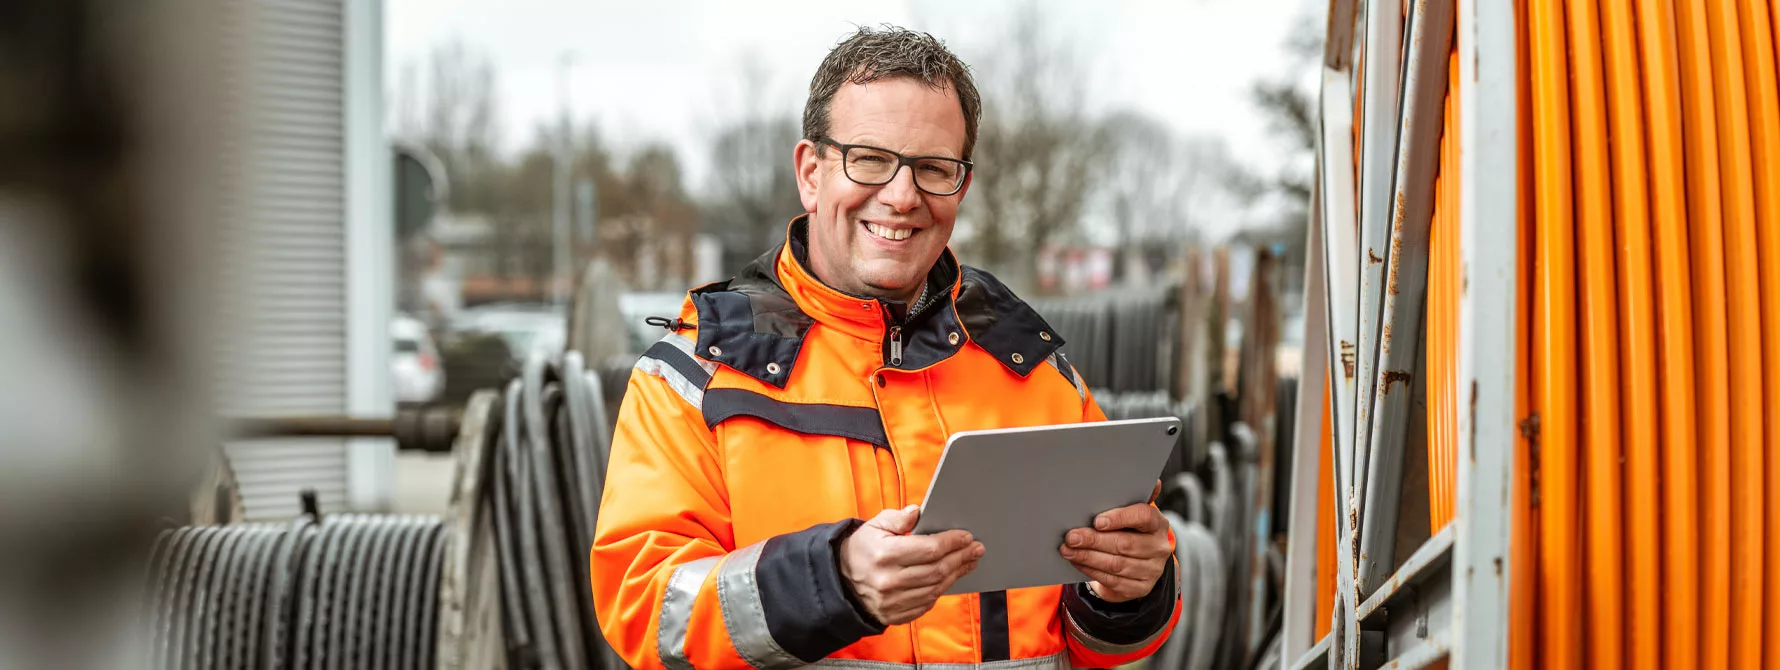 Diplom Ingenieur Thomas Gröne von der Emil Tepe GmbH mit einem Tablet in den Händen